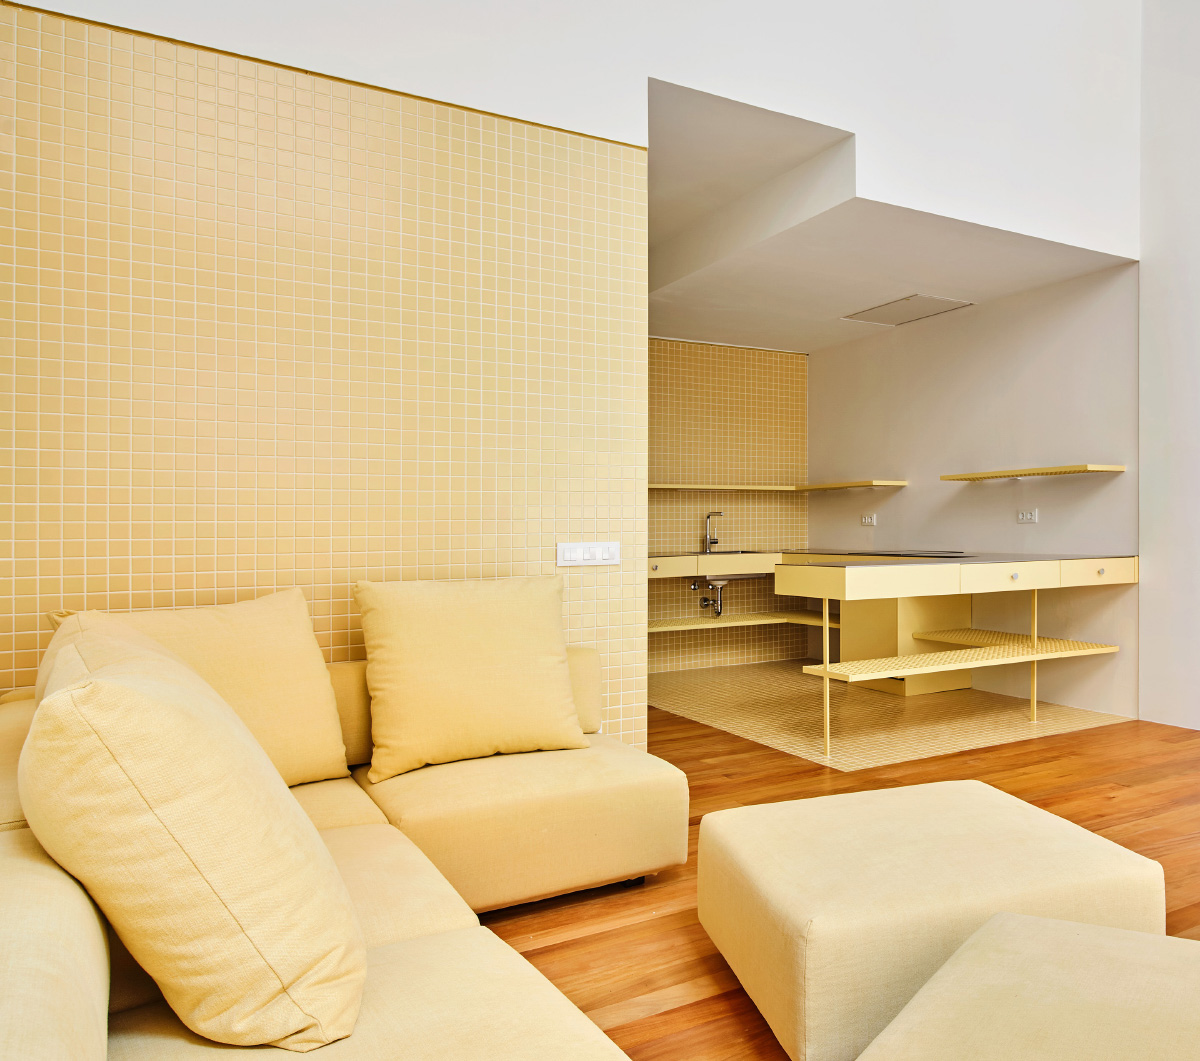 一栋镶着金色瓷砖的公寓大楼的内部